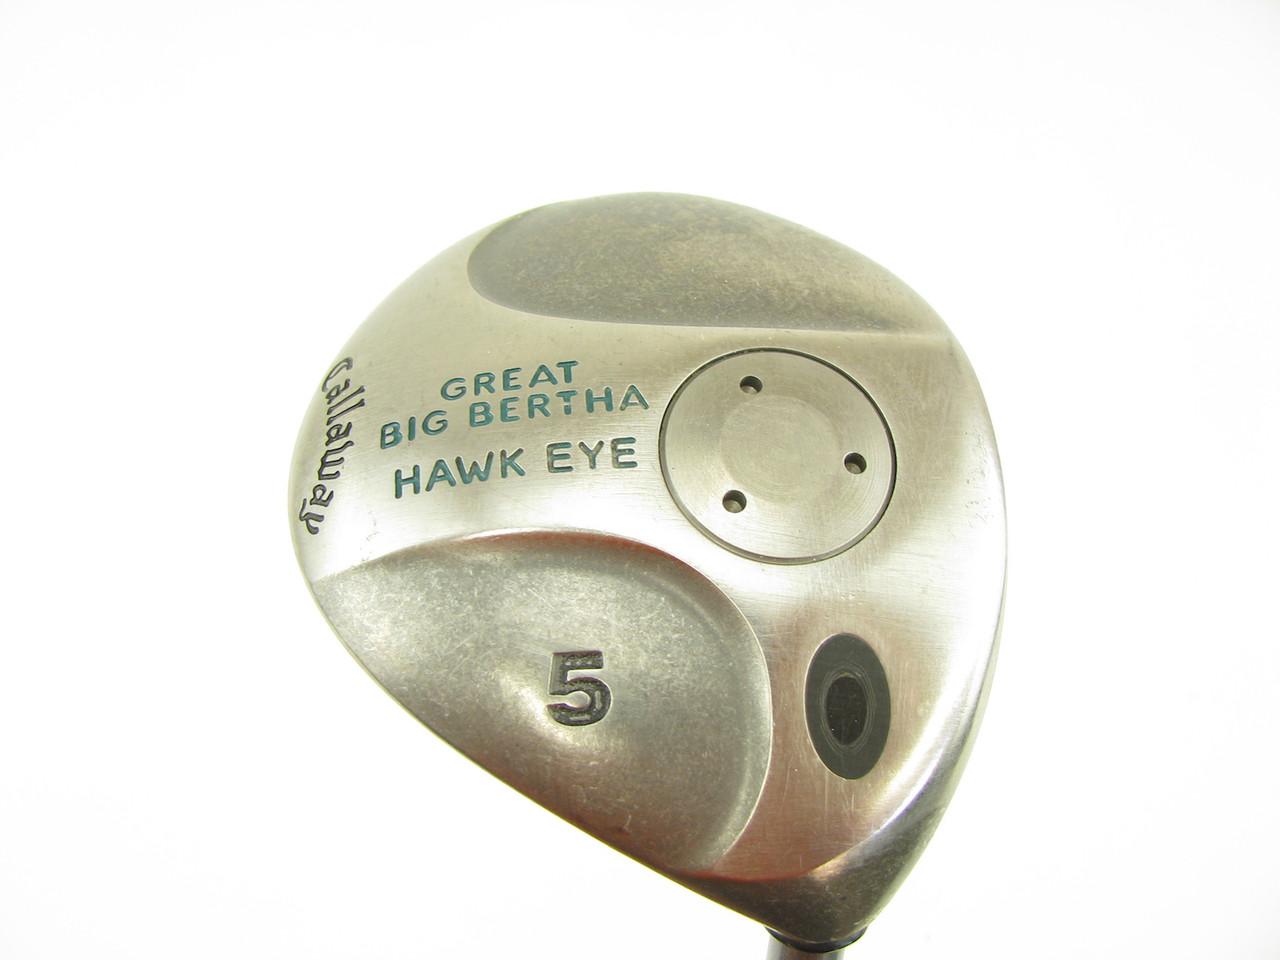 LADIES Callaway Great Big Bertha Hawkeye Fairway 5 wood with Graphite Gems  - Clubs n Covers Golf